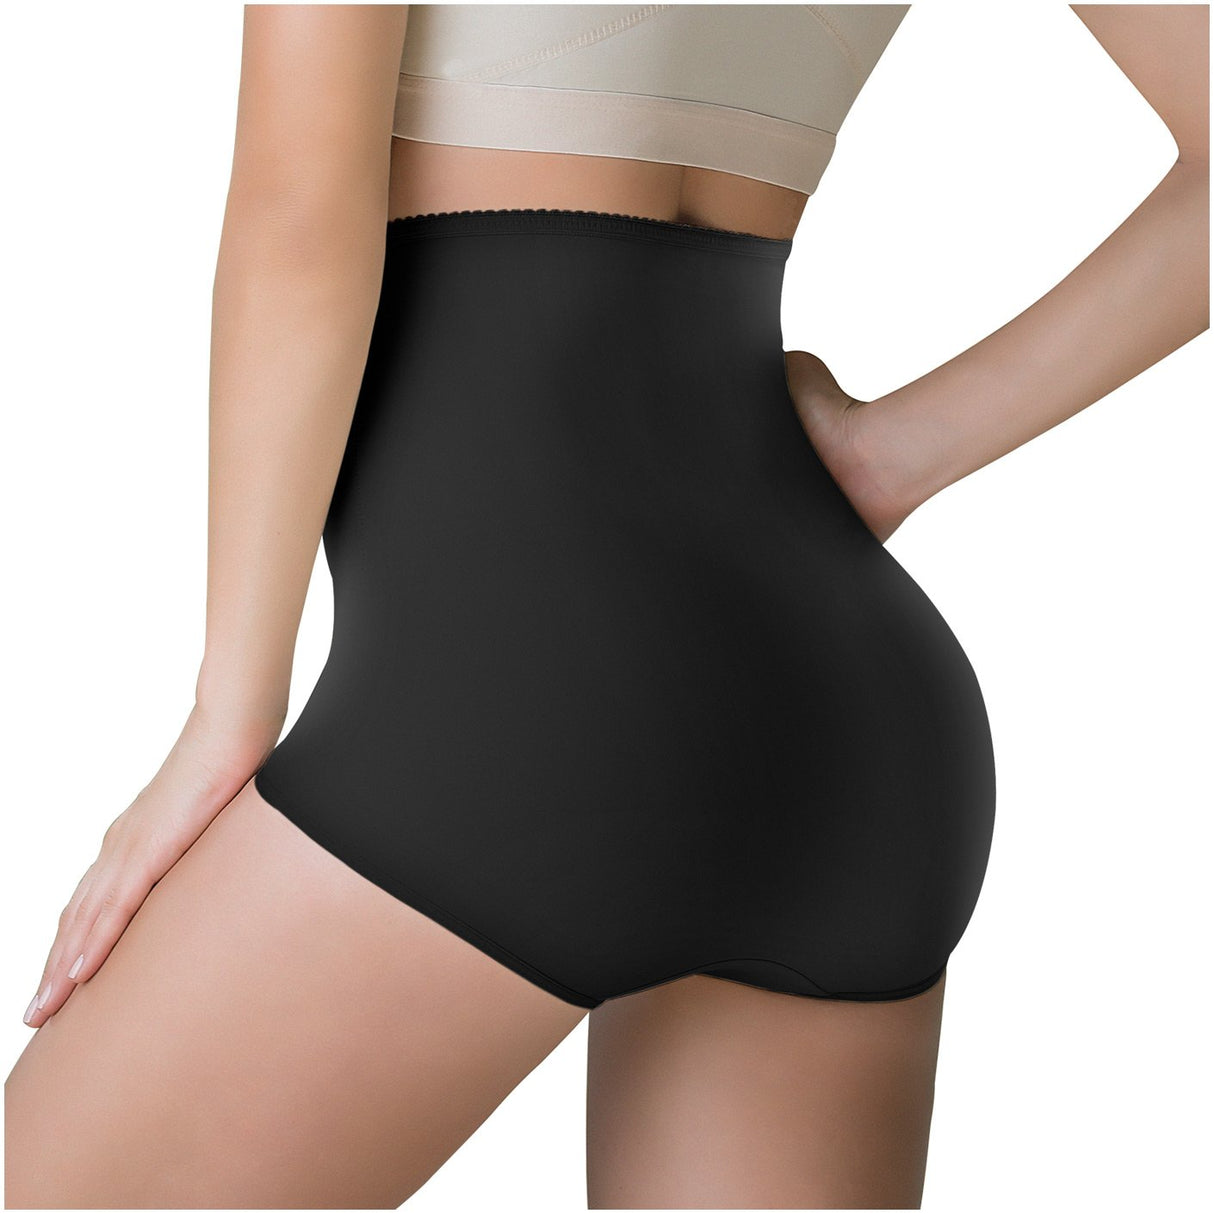 Faja estilo panty control de abdomen y cintura | Venta de Liquidacion